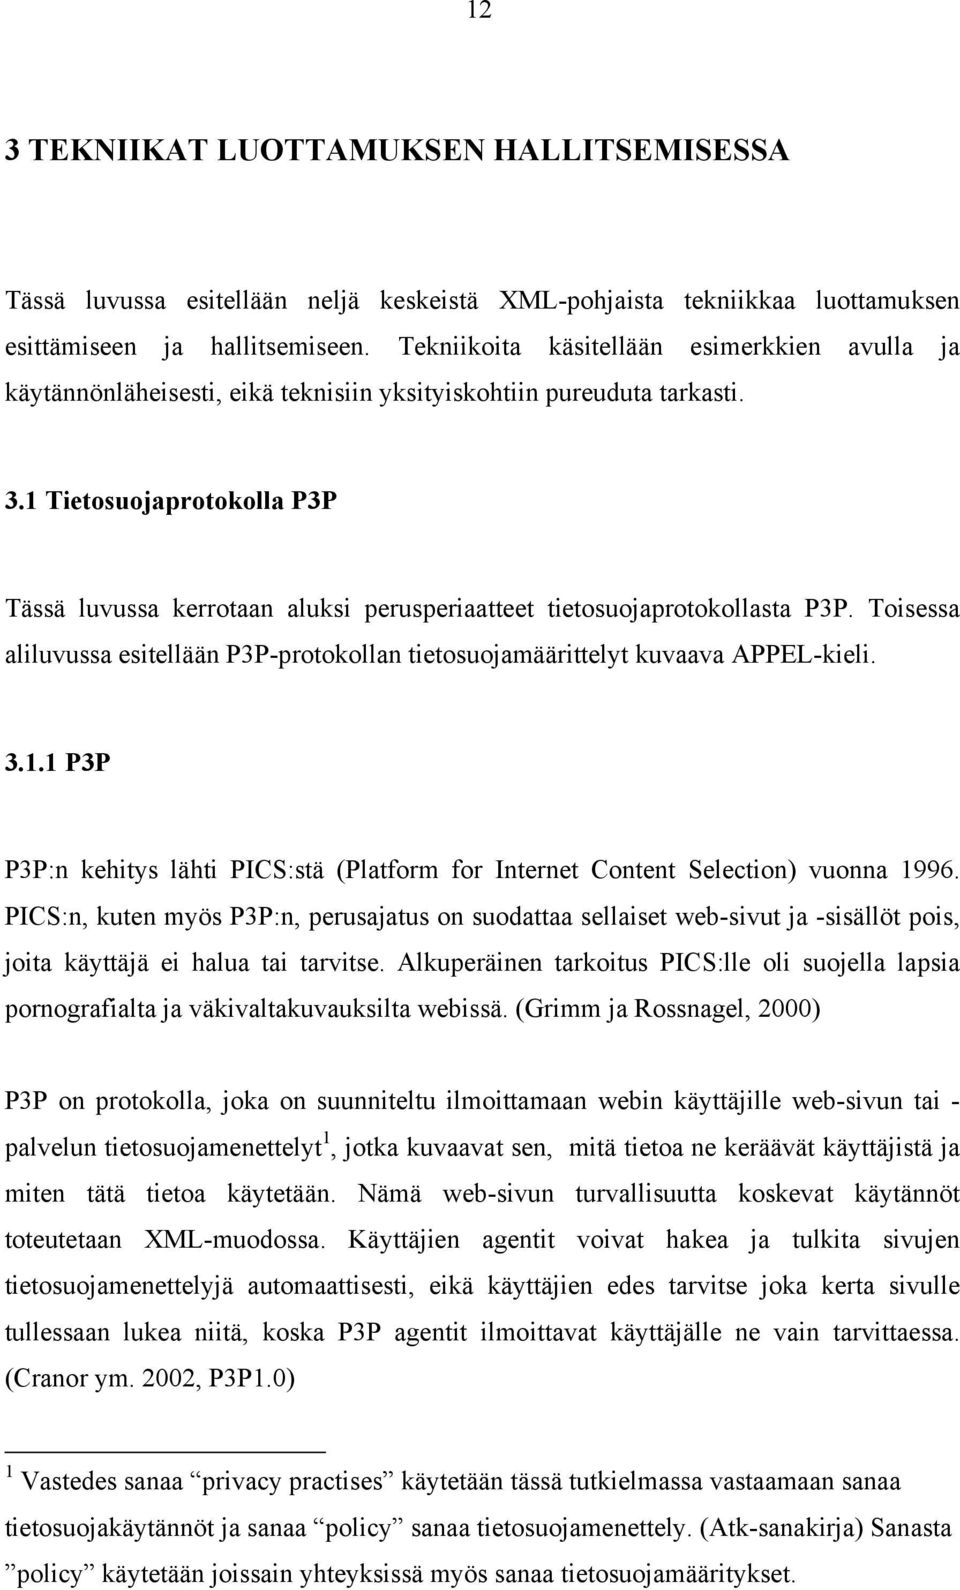 1 Tietosuojaprotokolla P3P Tässä luvussa kerrotaan aluksi perusperiaatteet tietosuojaprotokollasta P3P. Toisessa aliluvussa esitellään P3P-protokollan tietosuojamäärittelyt kuvaava APPEL-kieli. 3.1.1 P3P P3P:n kehitys lähti PICS:stä (Platform for Internet Content Selection) vuonna 1996.